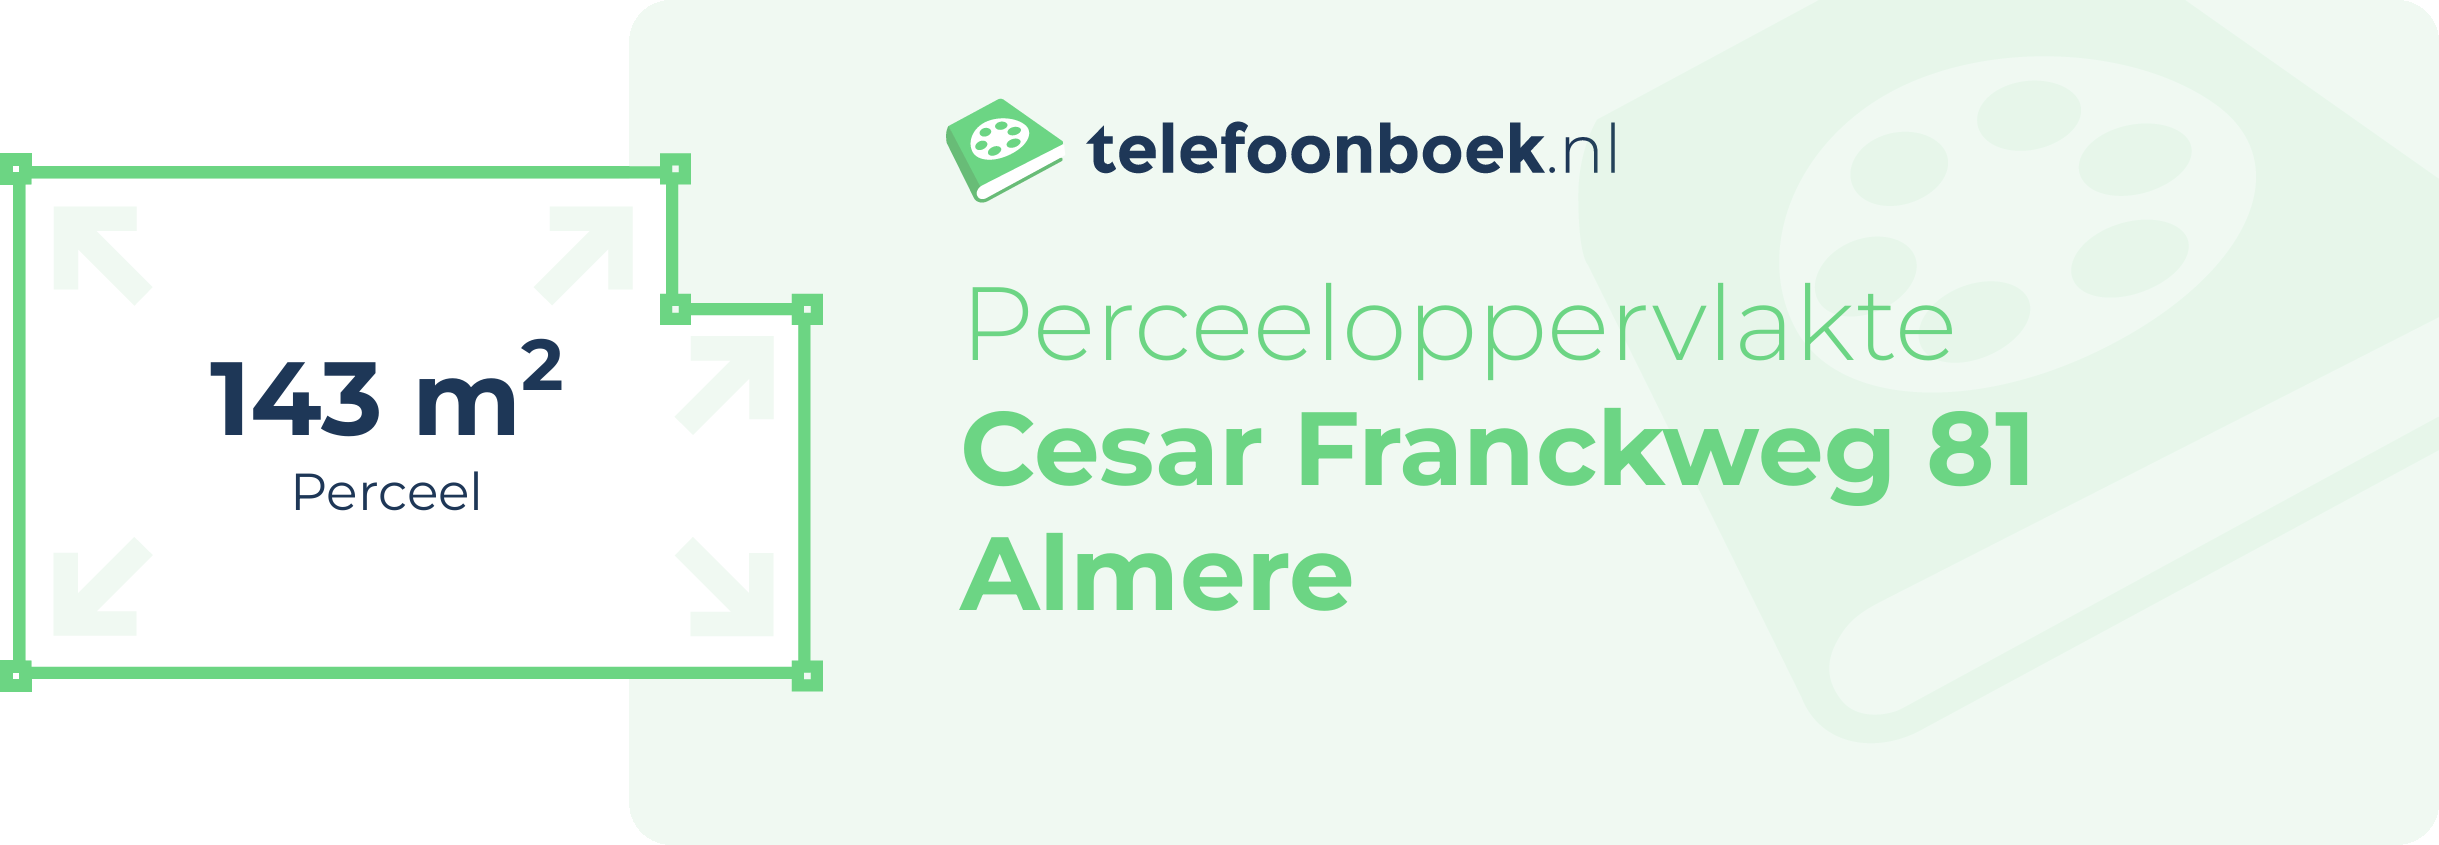 Perceeloppervlakte Cesar Franckweg 81 Almere